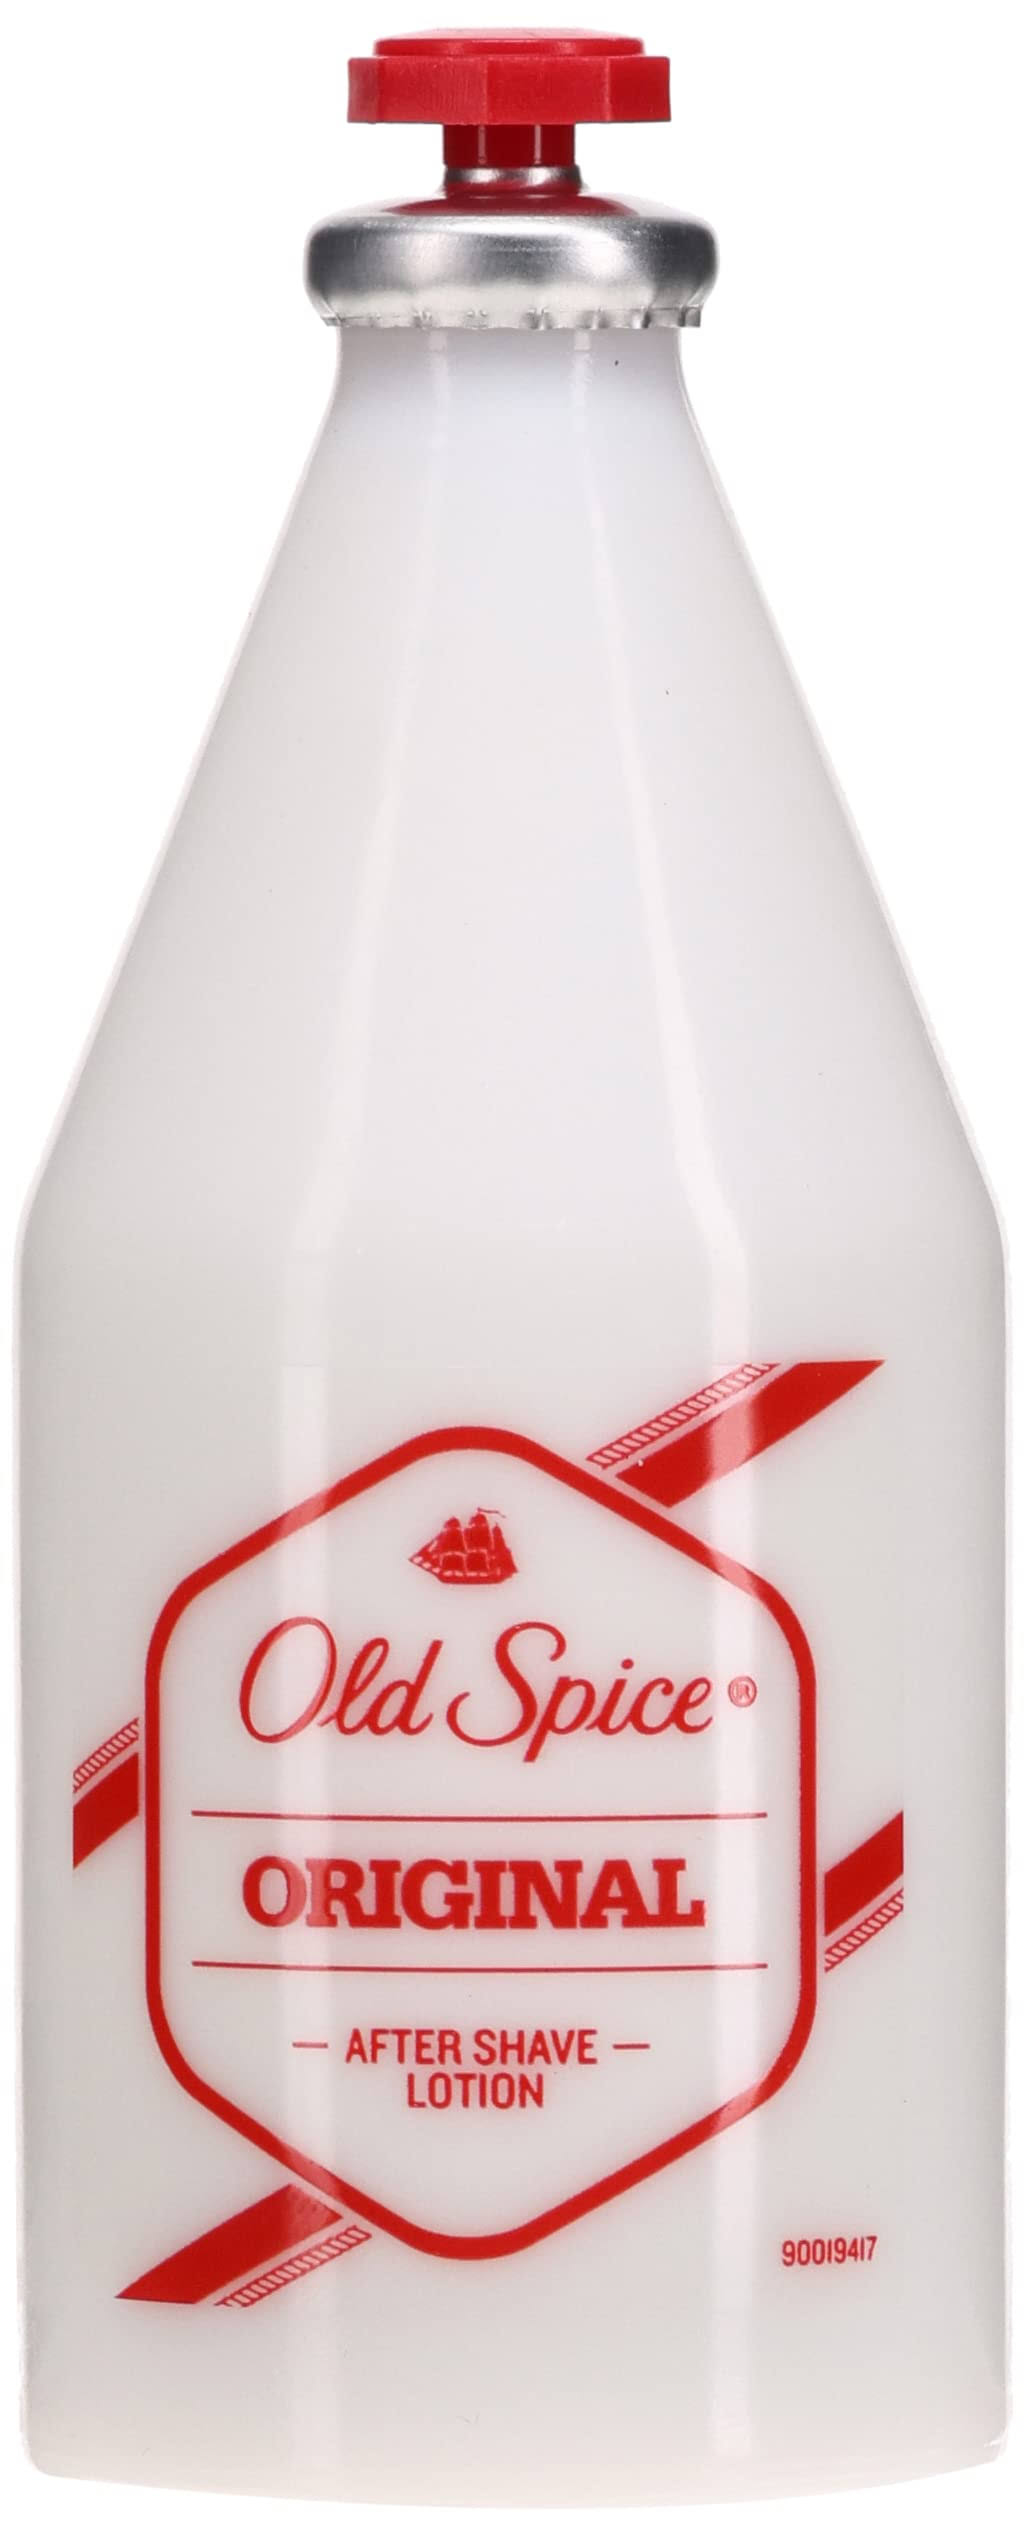 Old Spice Original After Shave - 100ml